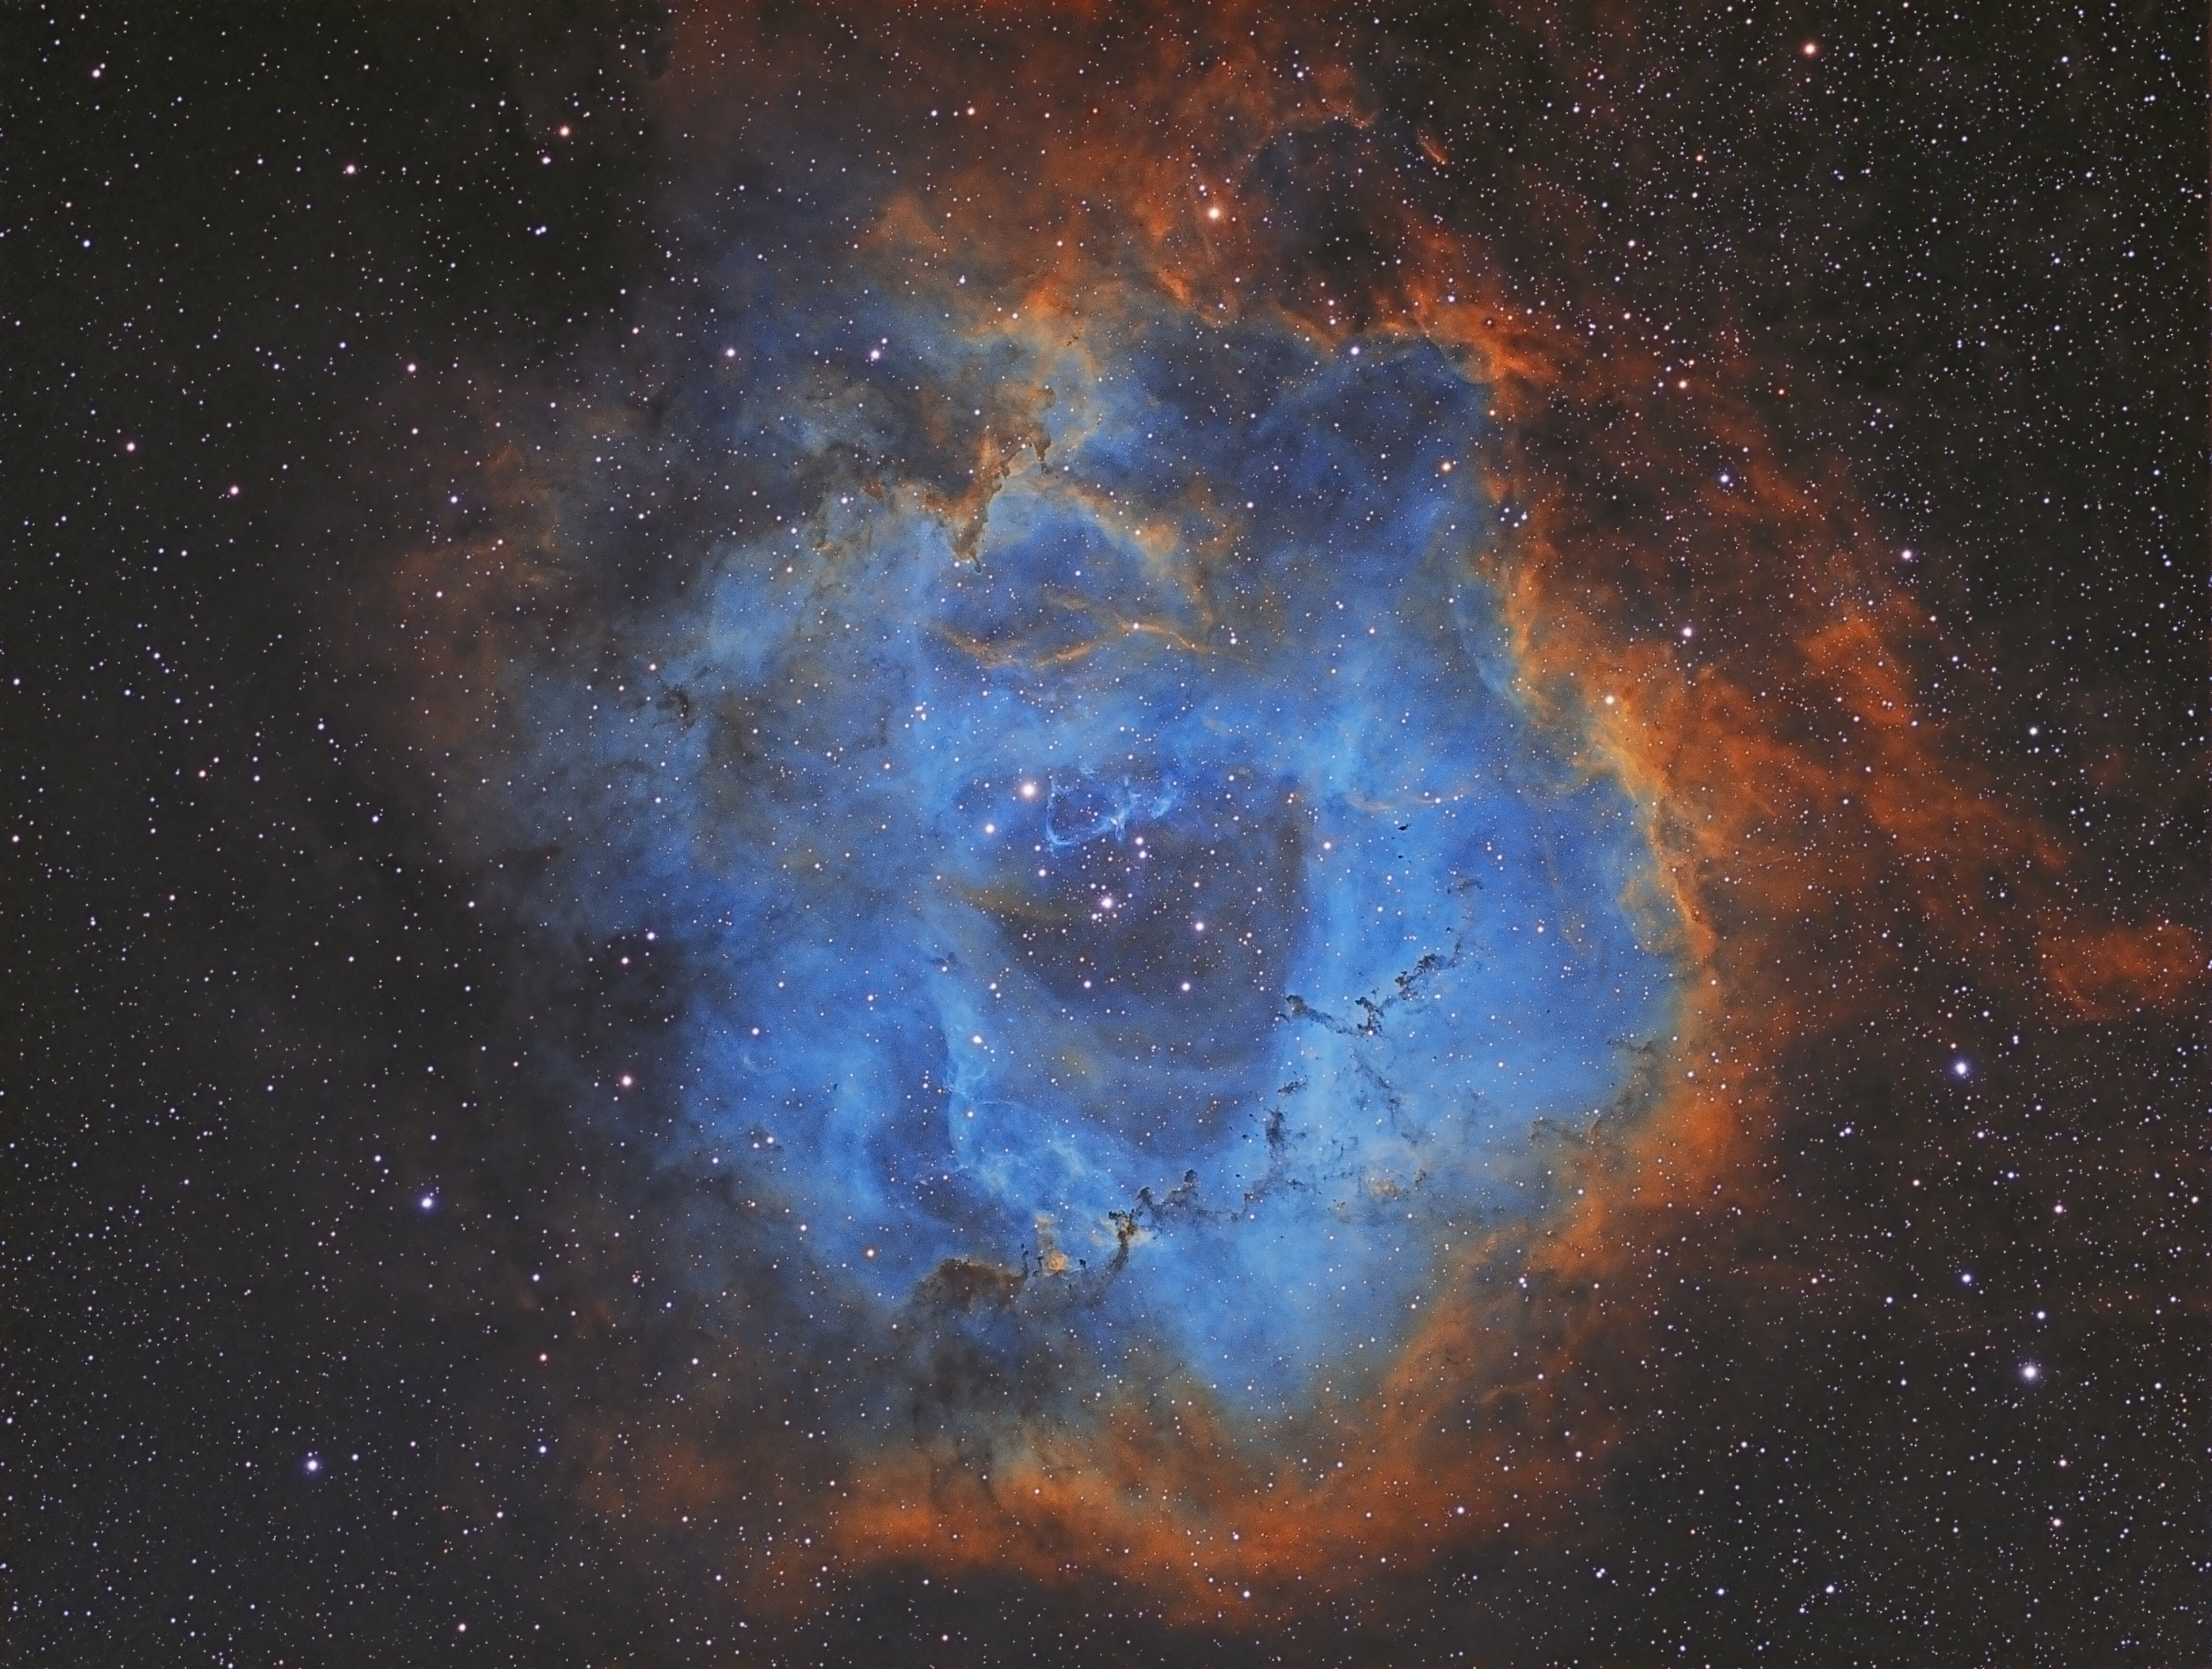 Ngc 2244 Open Cluster & Rosette Nebula In Monoceros